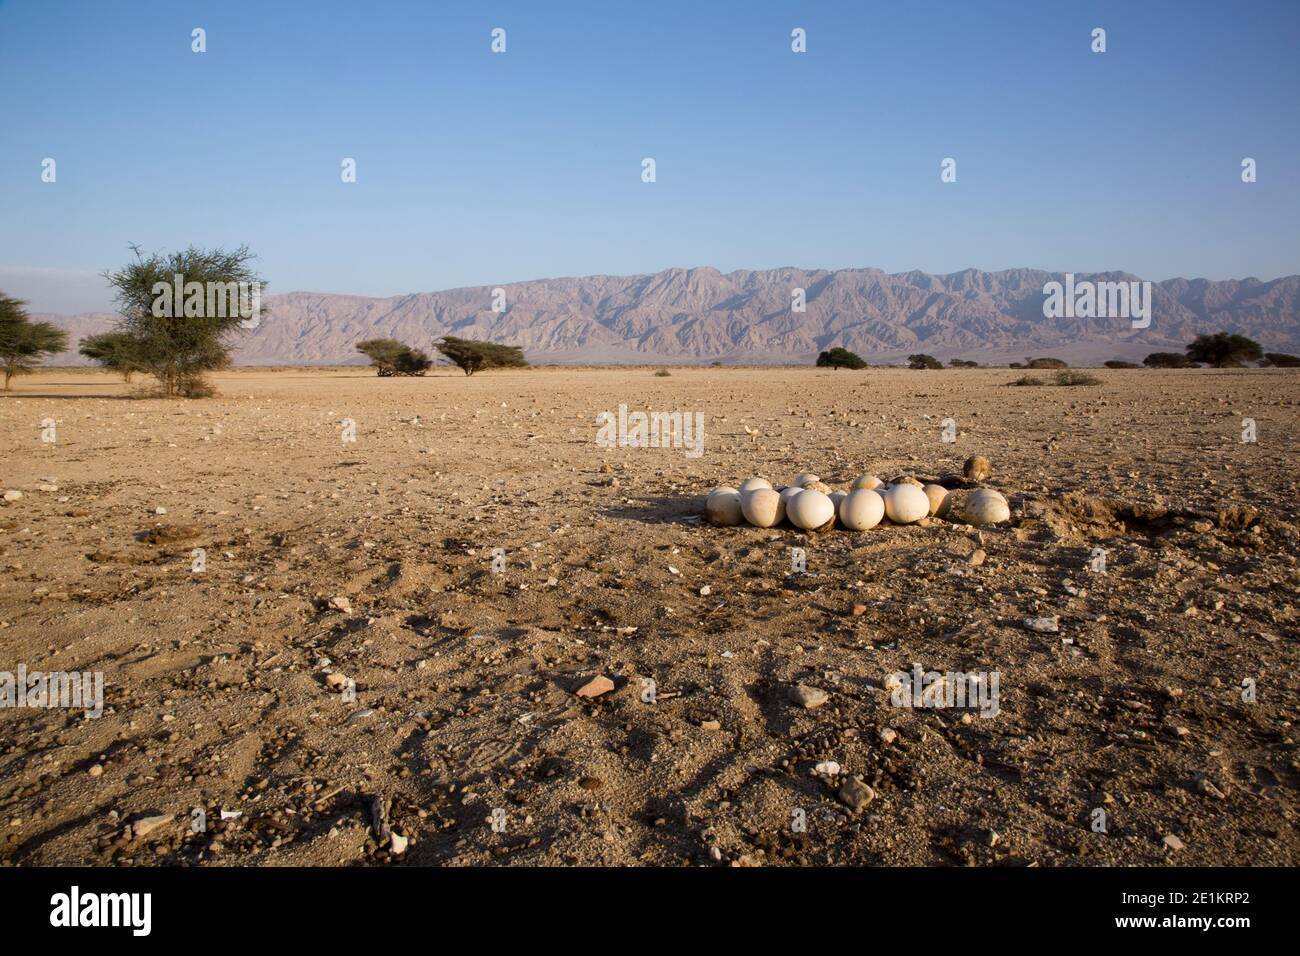 Eier in einem Nest eines Straußes (Struthio camelus) auf dem Boden. Die Eier sind im Vordergrund zu sehen. Fotografiert in der Hai Bar Reintroductio Stockfoto